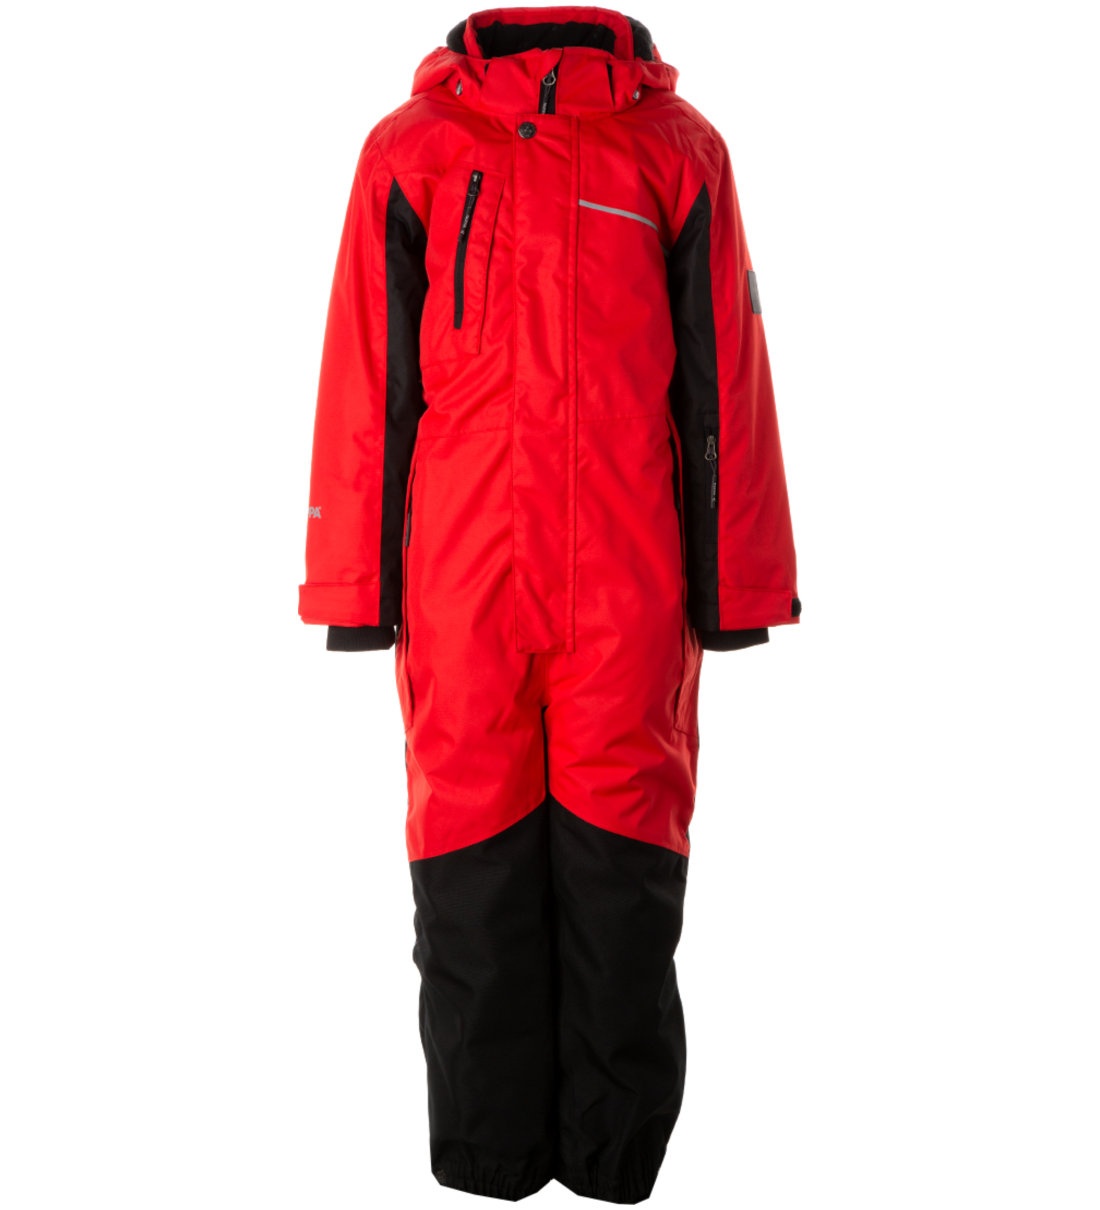 Комбинезон детский Huppa Mooley 3, красный, черный, 134 комплект верхней одежды детский huppa winter рисунок морская волна 122